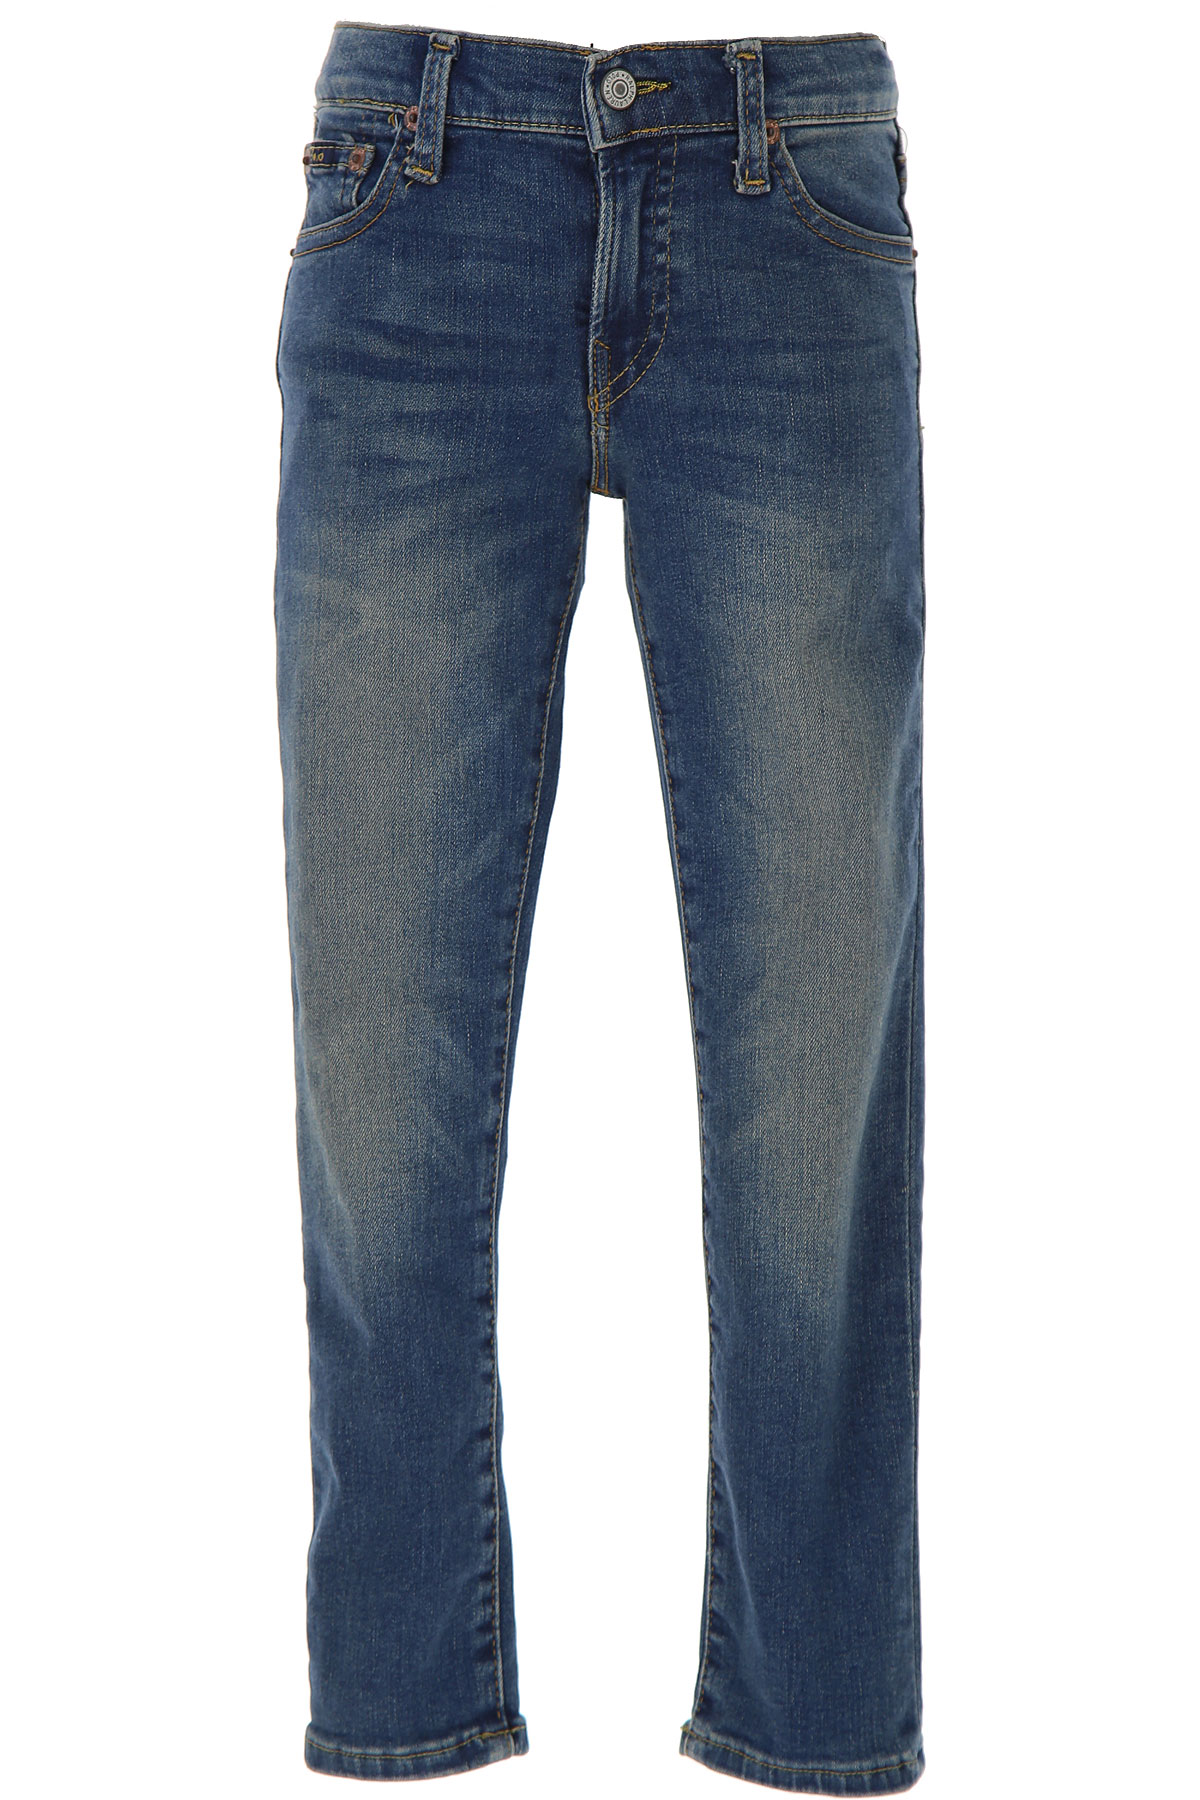 Ralph Lauren Kinder Jeans für Jungen Günstig im Sale, Denim- Blau, Baumwolle, 2017, 5Y 6Y 7Y